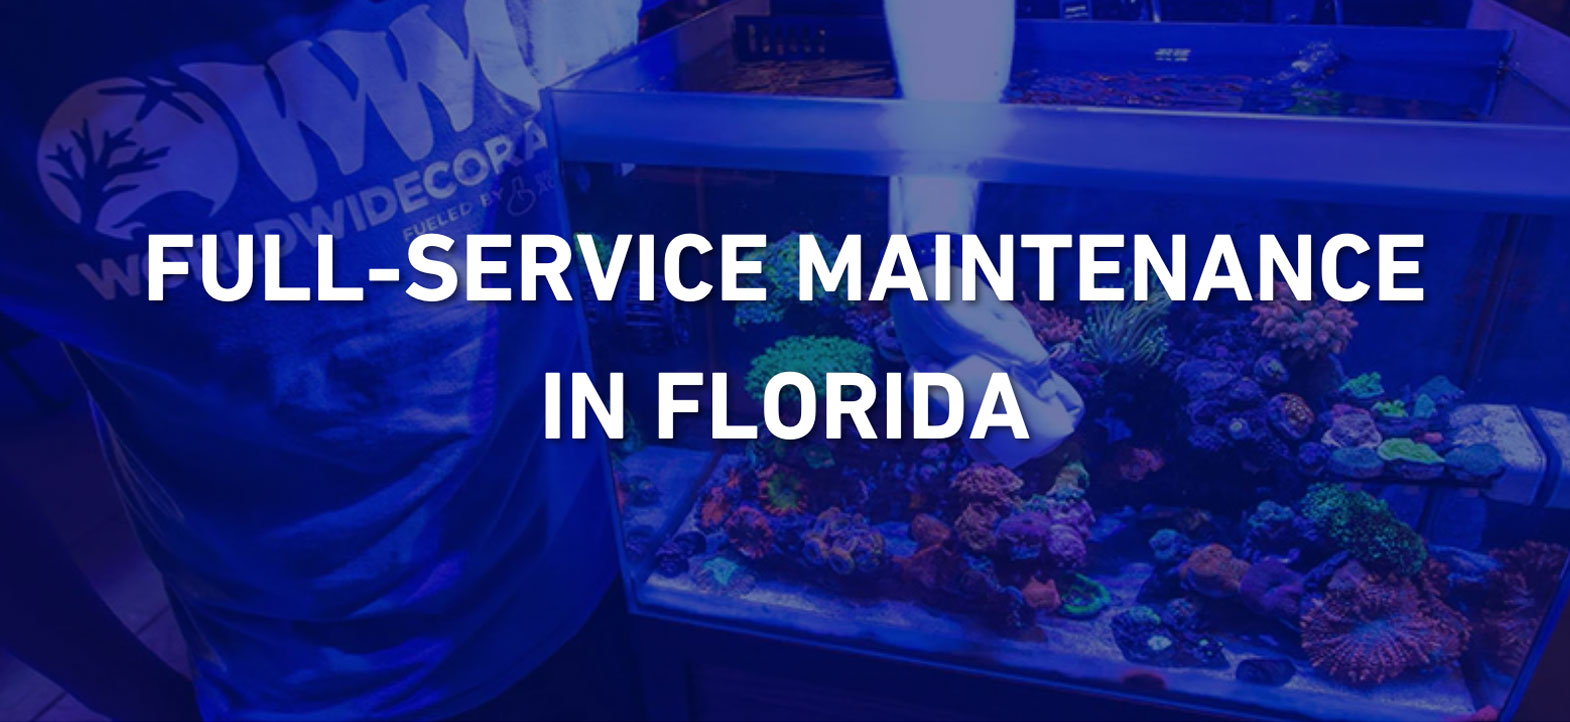 Professional Aquarium Maintenance Services in Orlando, FL